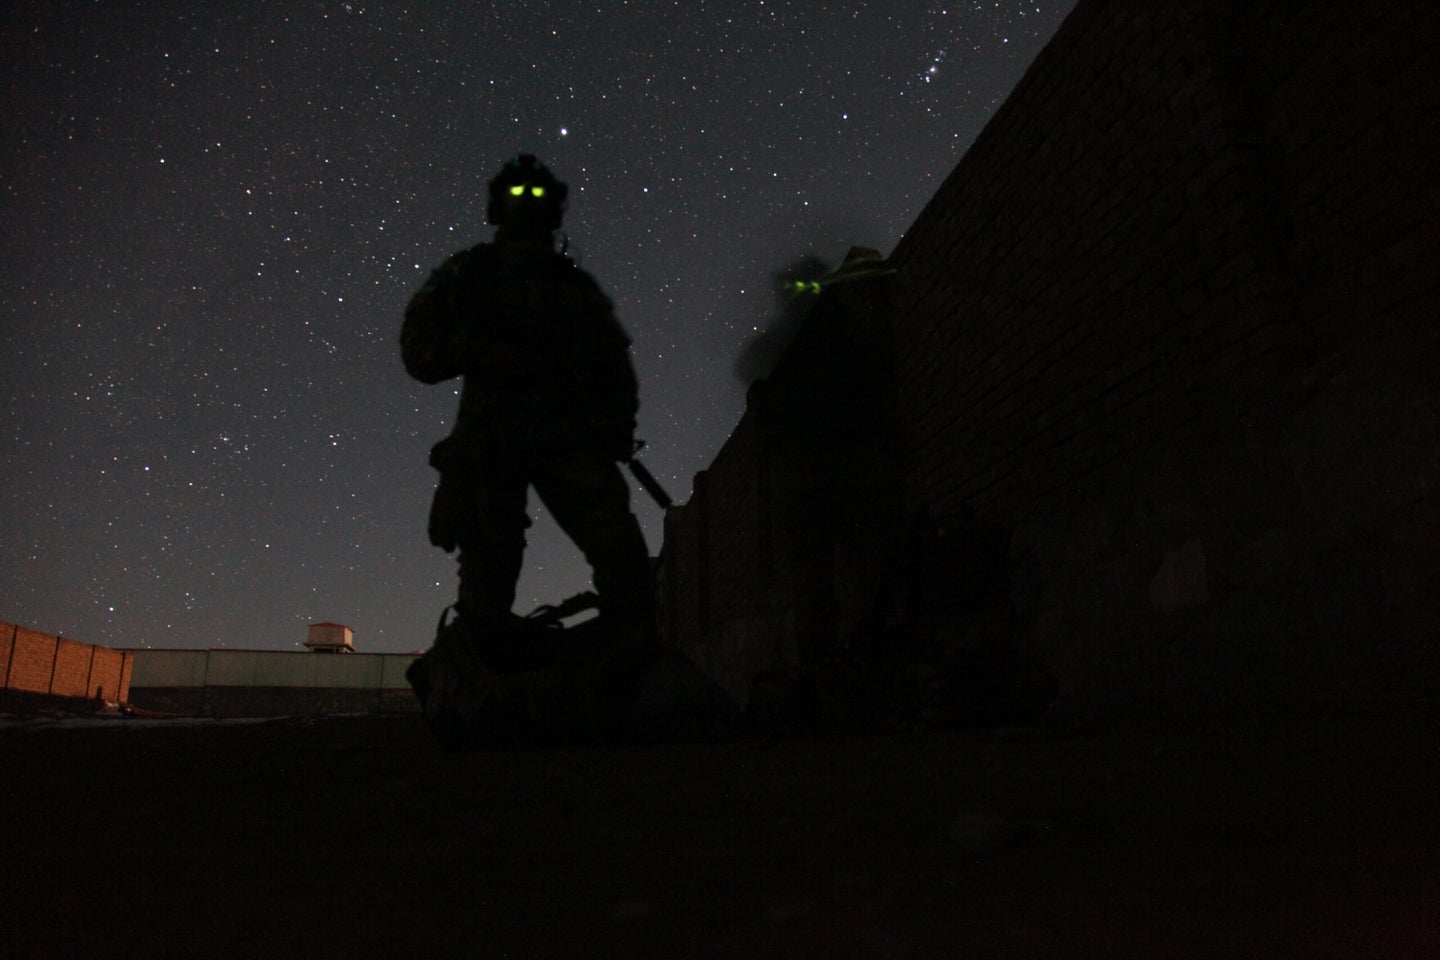 75th Ranger Regiment afghanistan